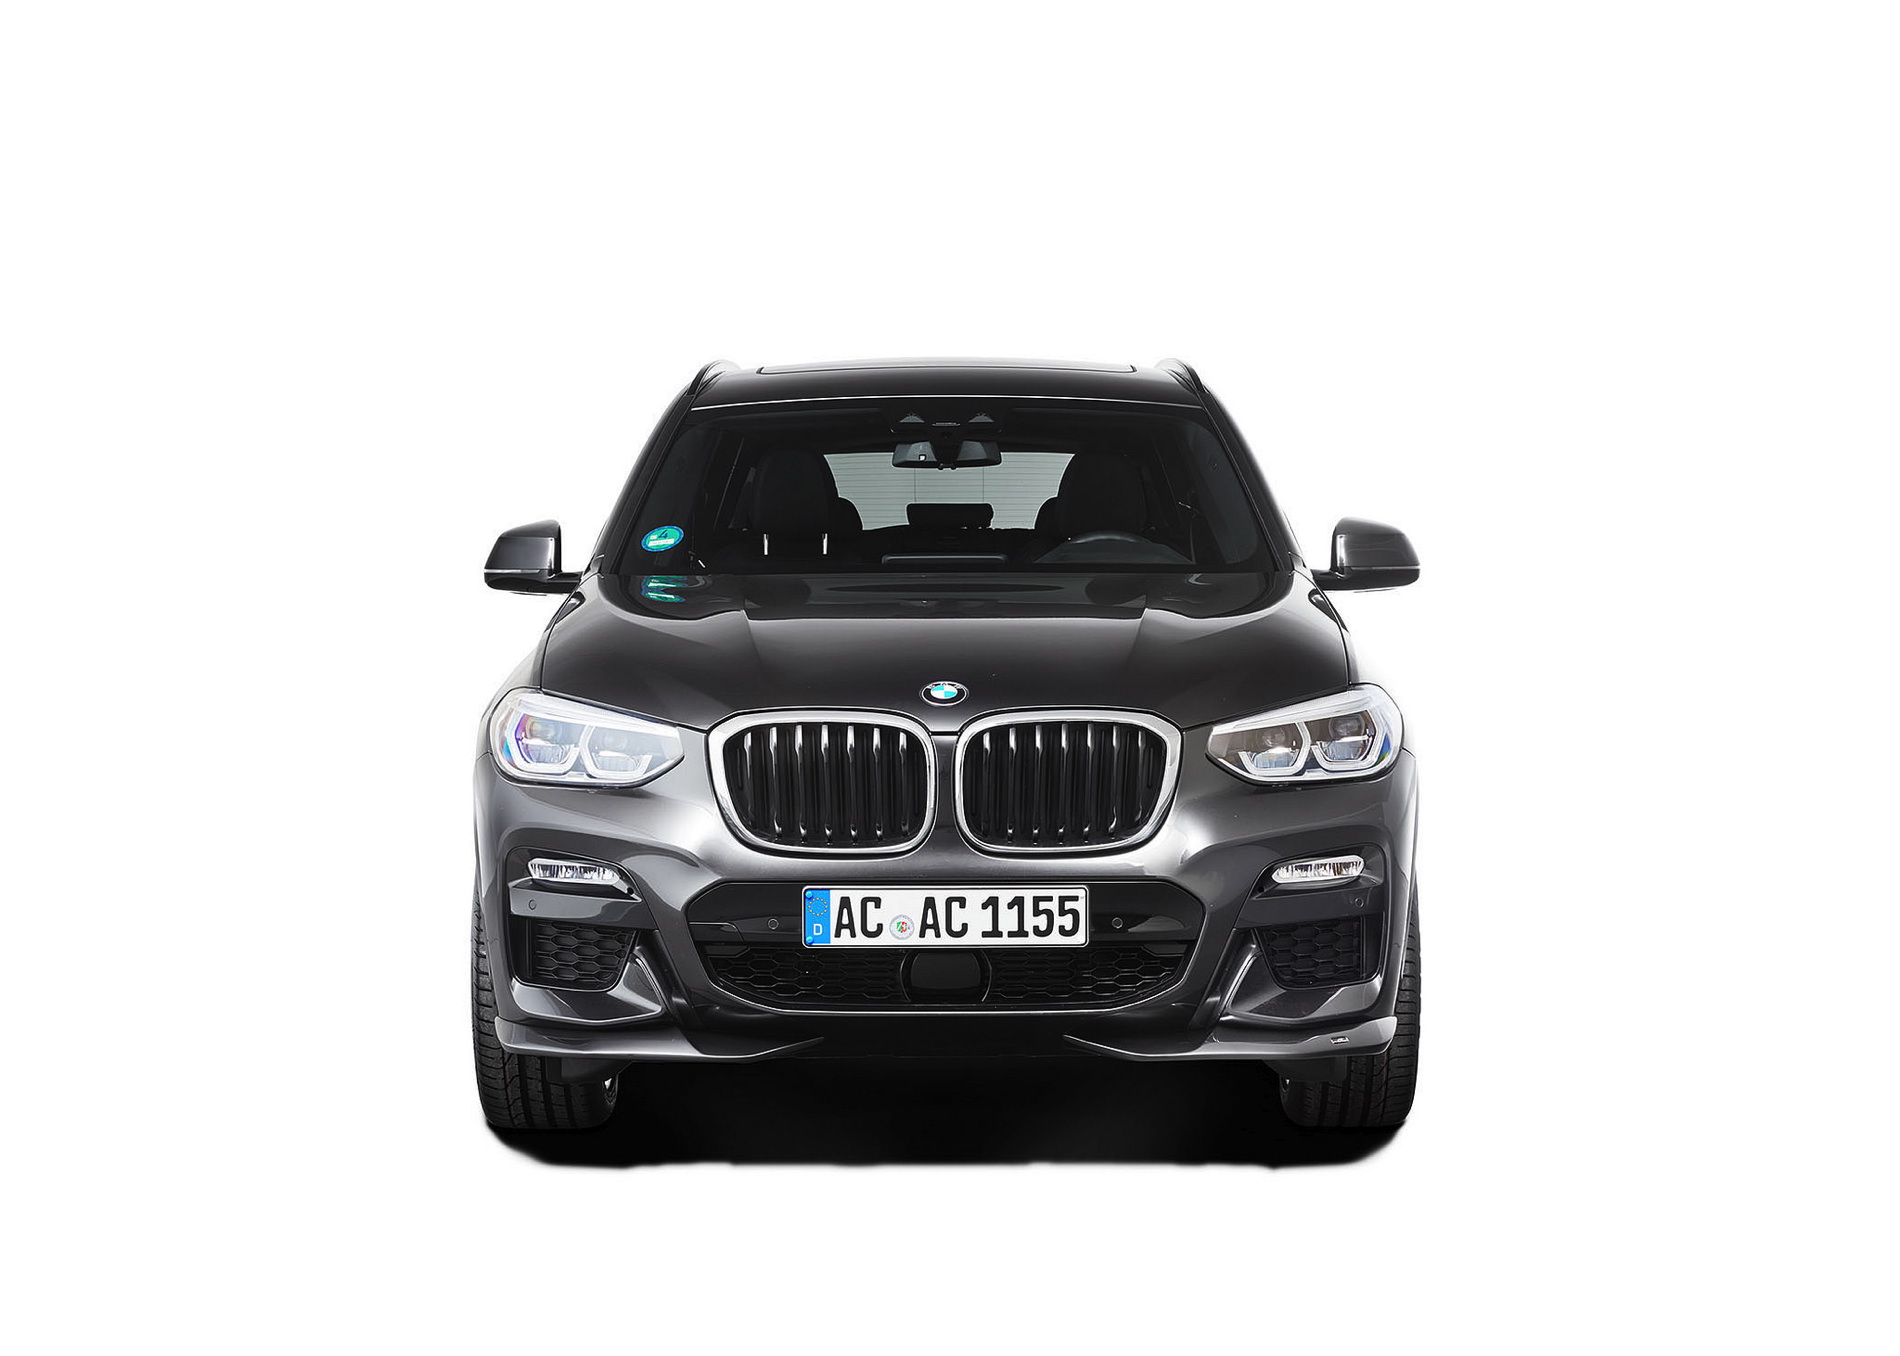 BMW  AC SCHNITZER ENHANCEMENT CAR SALES BROCHURES X3 jm 